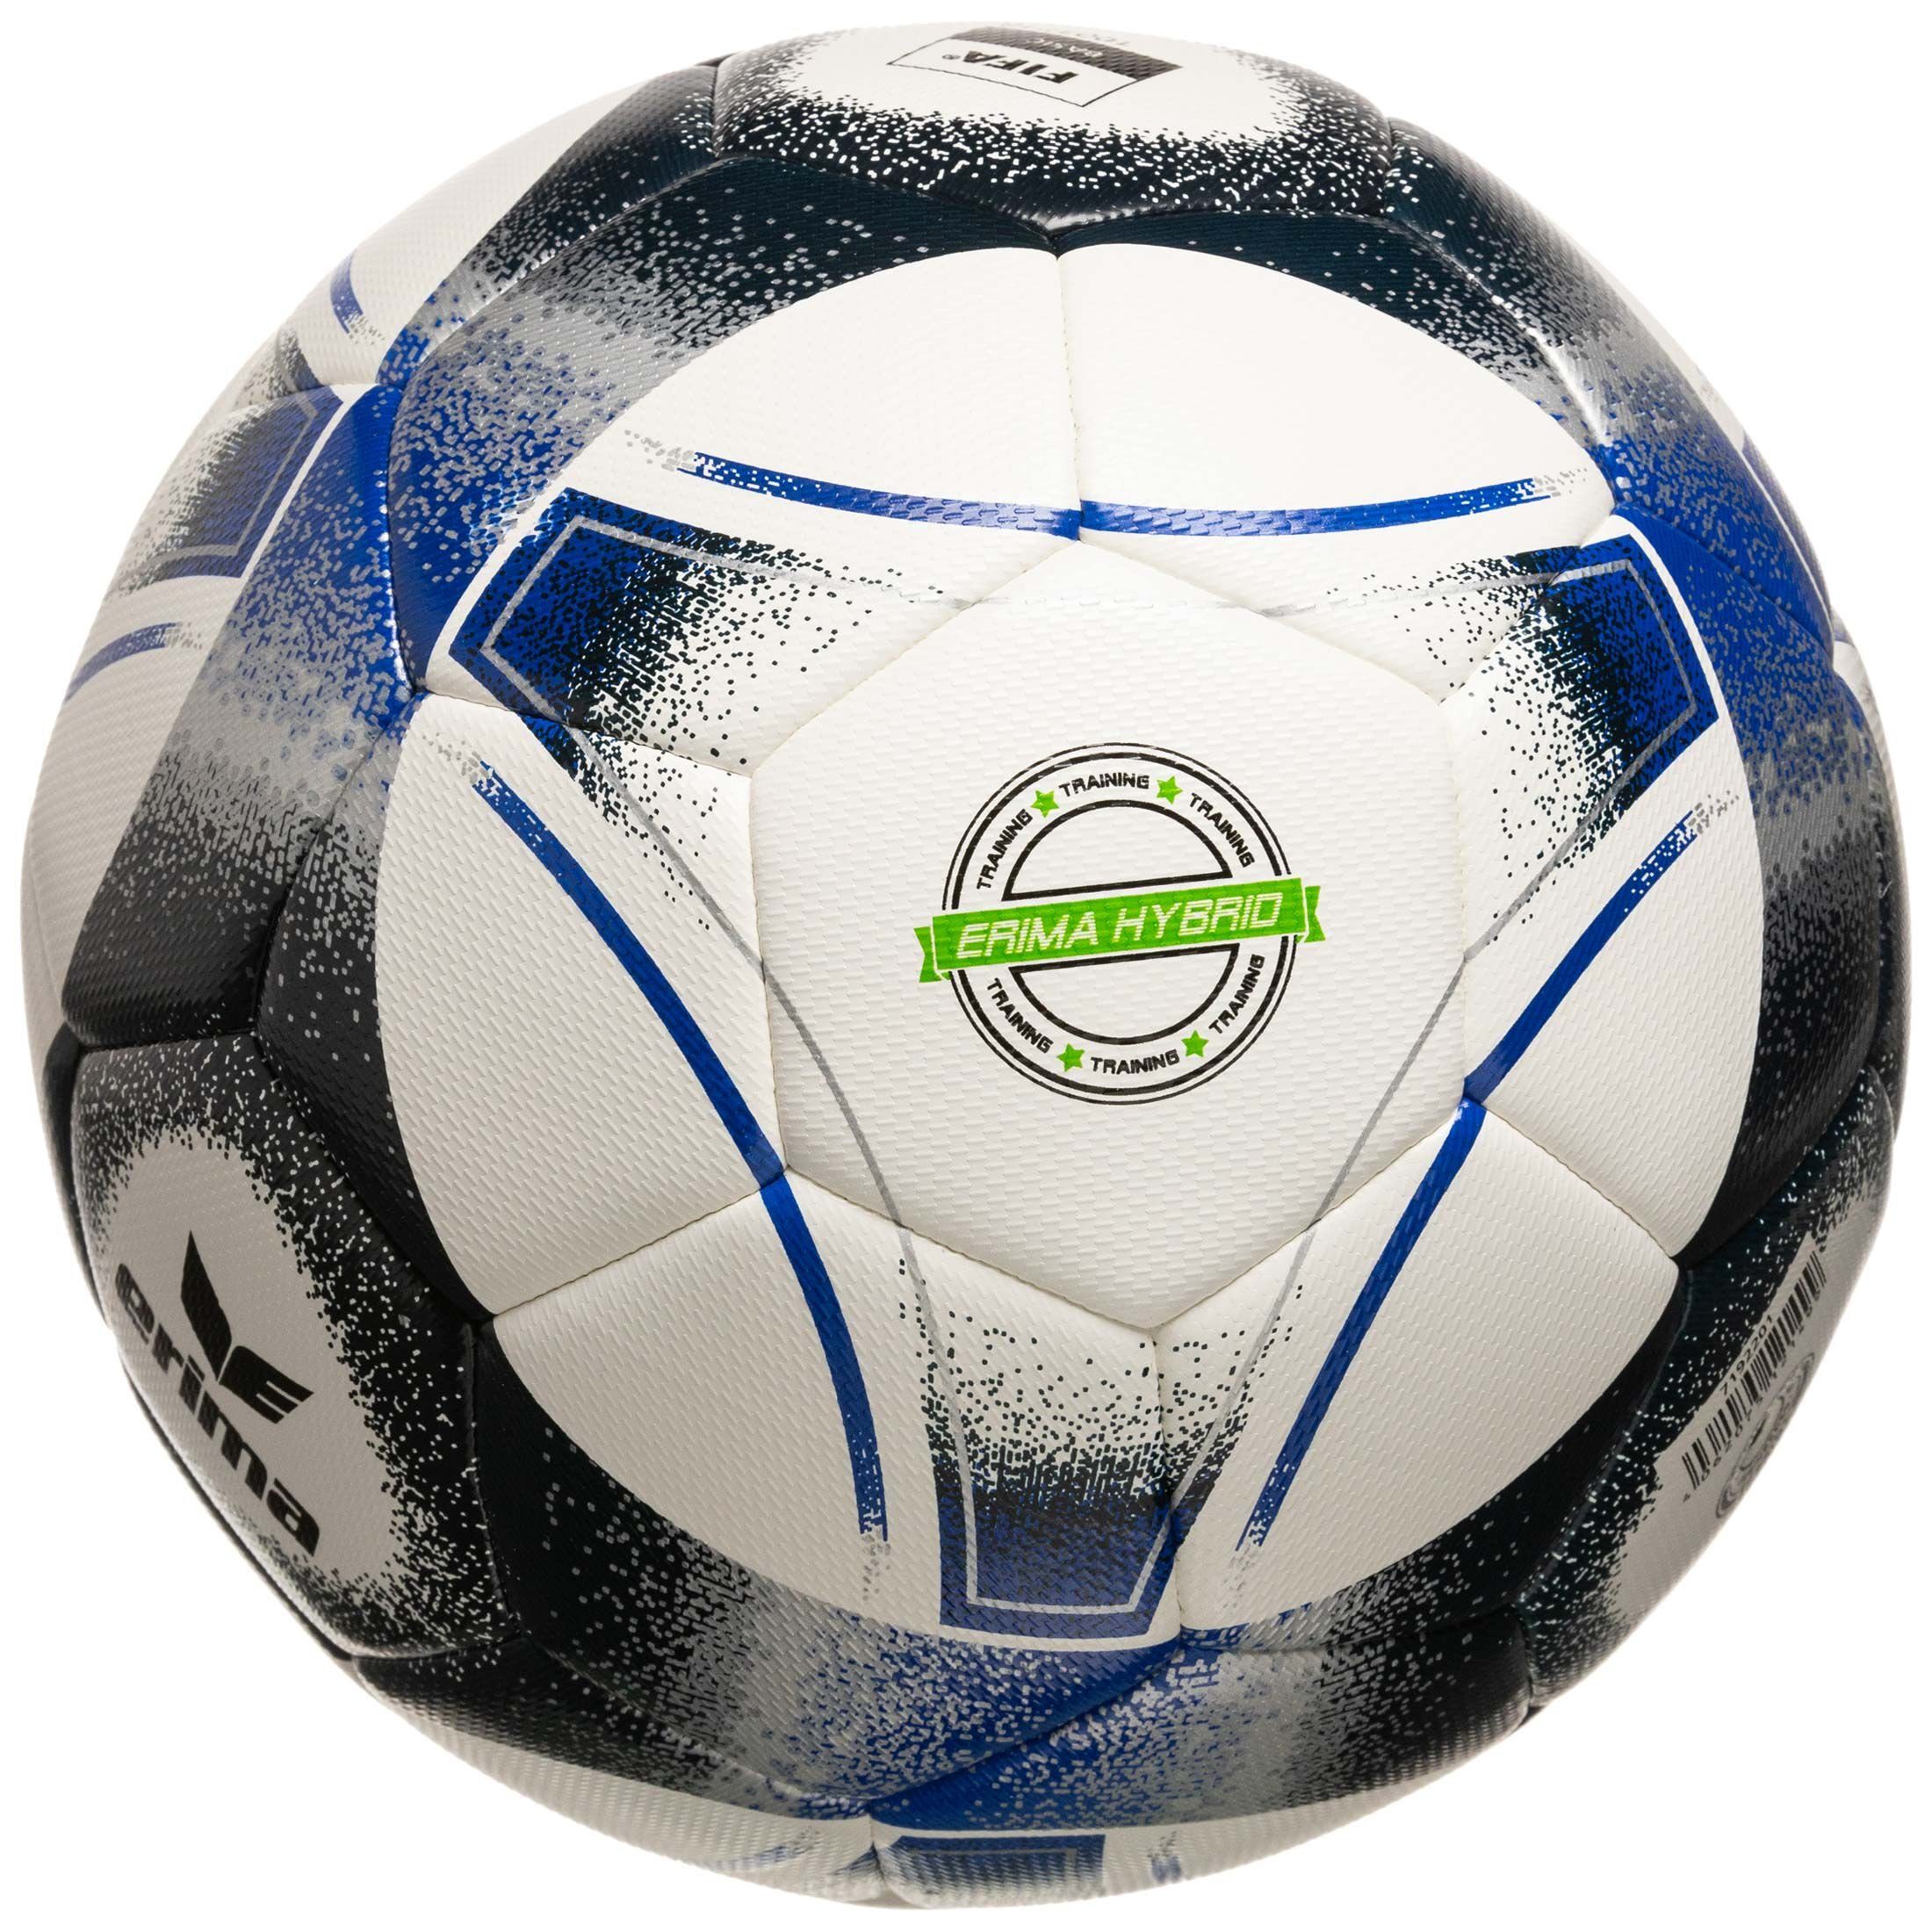 Fußball Erima Fußball Hybrid dunkelblau Training